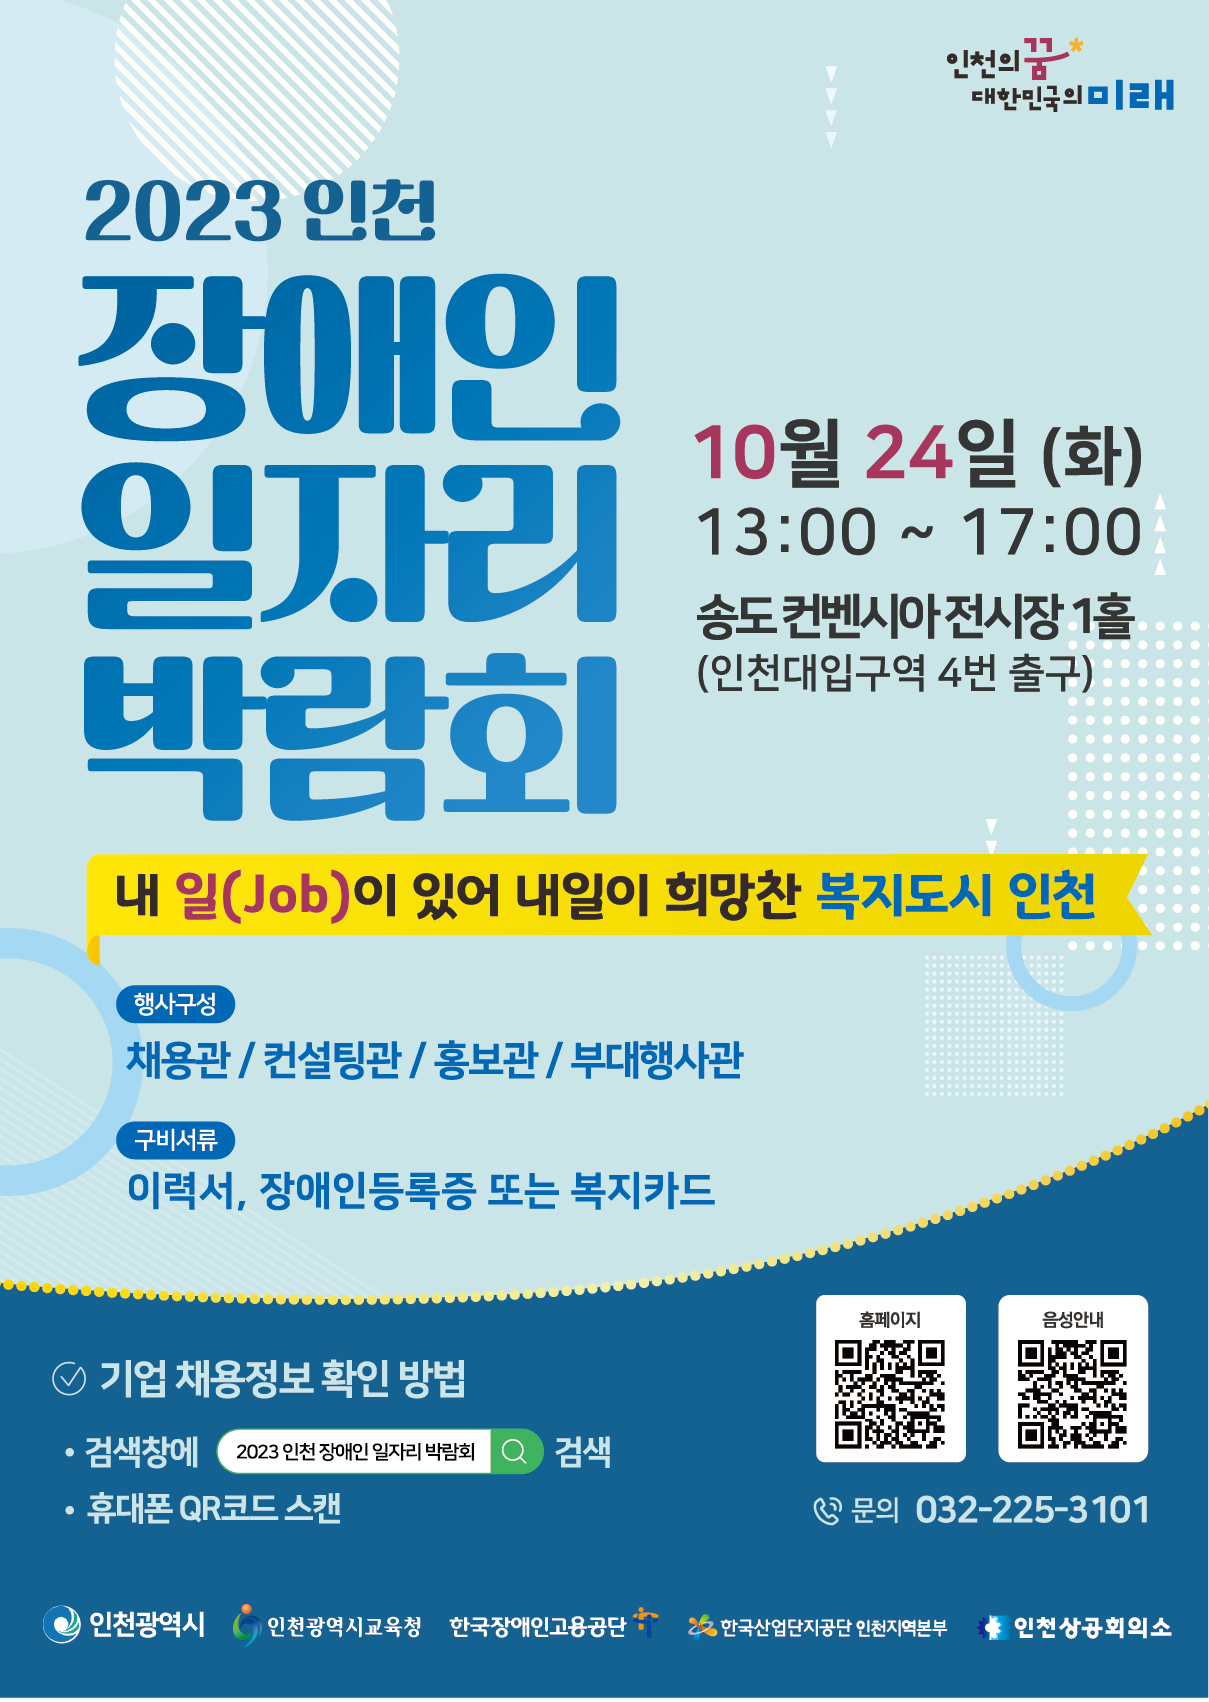 인천 장애인 일자리 박람회, 24일 송도에서 개최 관련 이미지